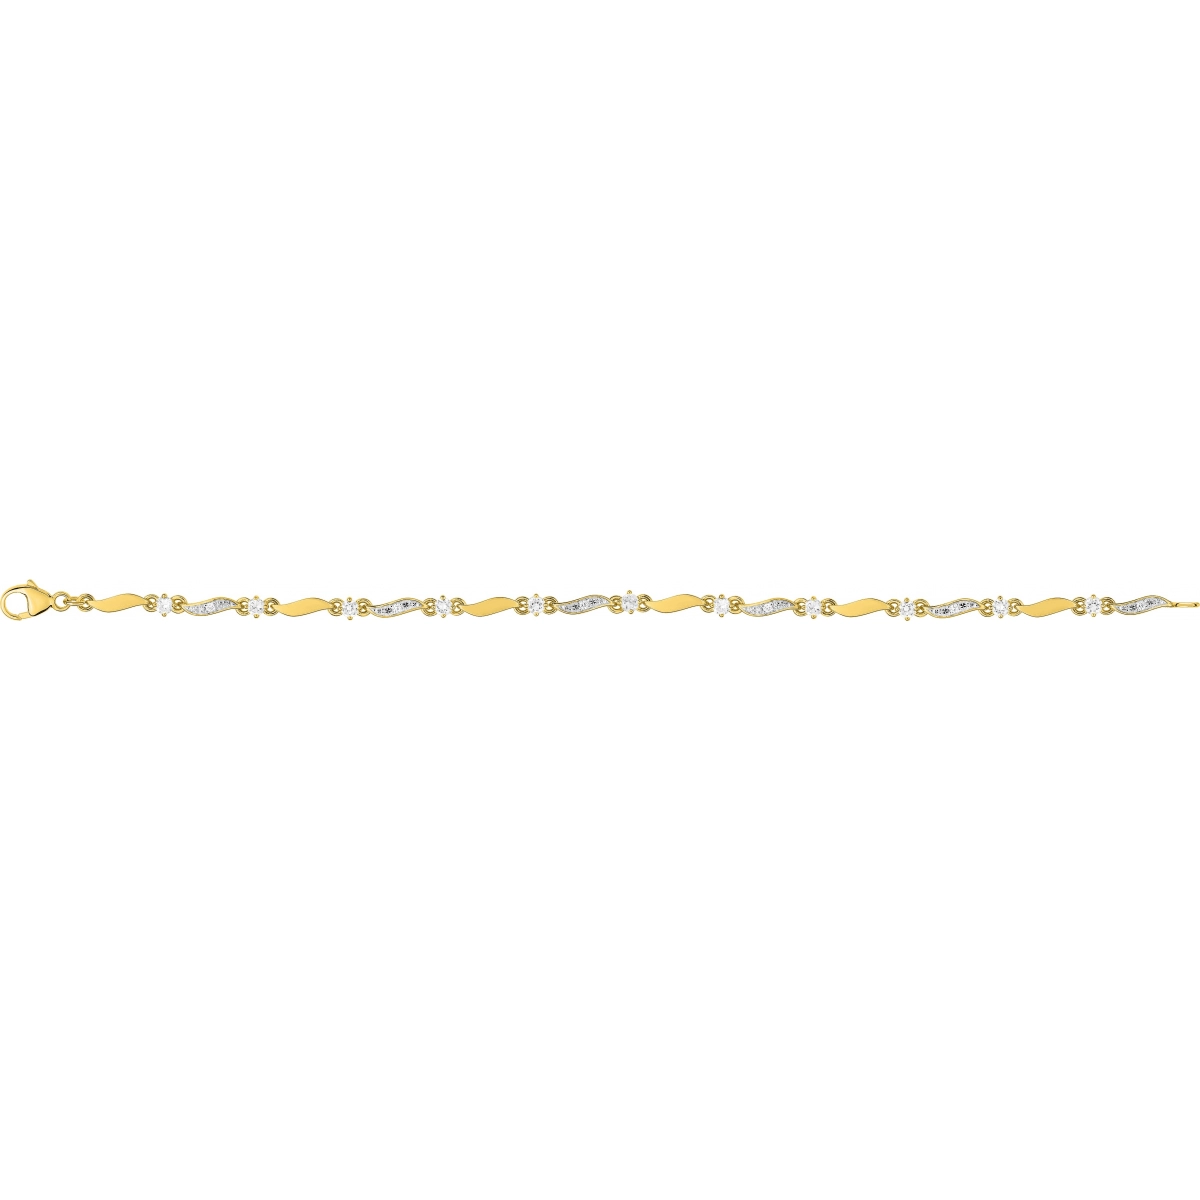 Bracelet 18cm w. cz gold plated Brass 2TG  Lua Blanca  BSBF34Z18.0